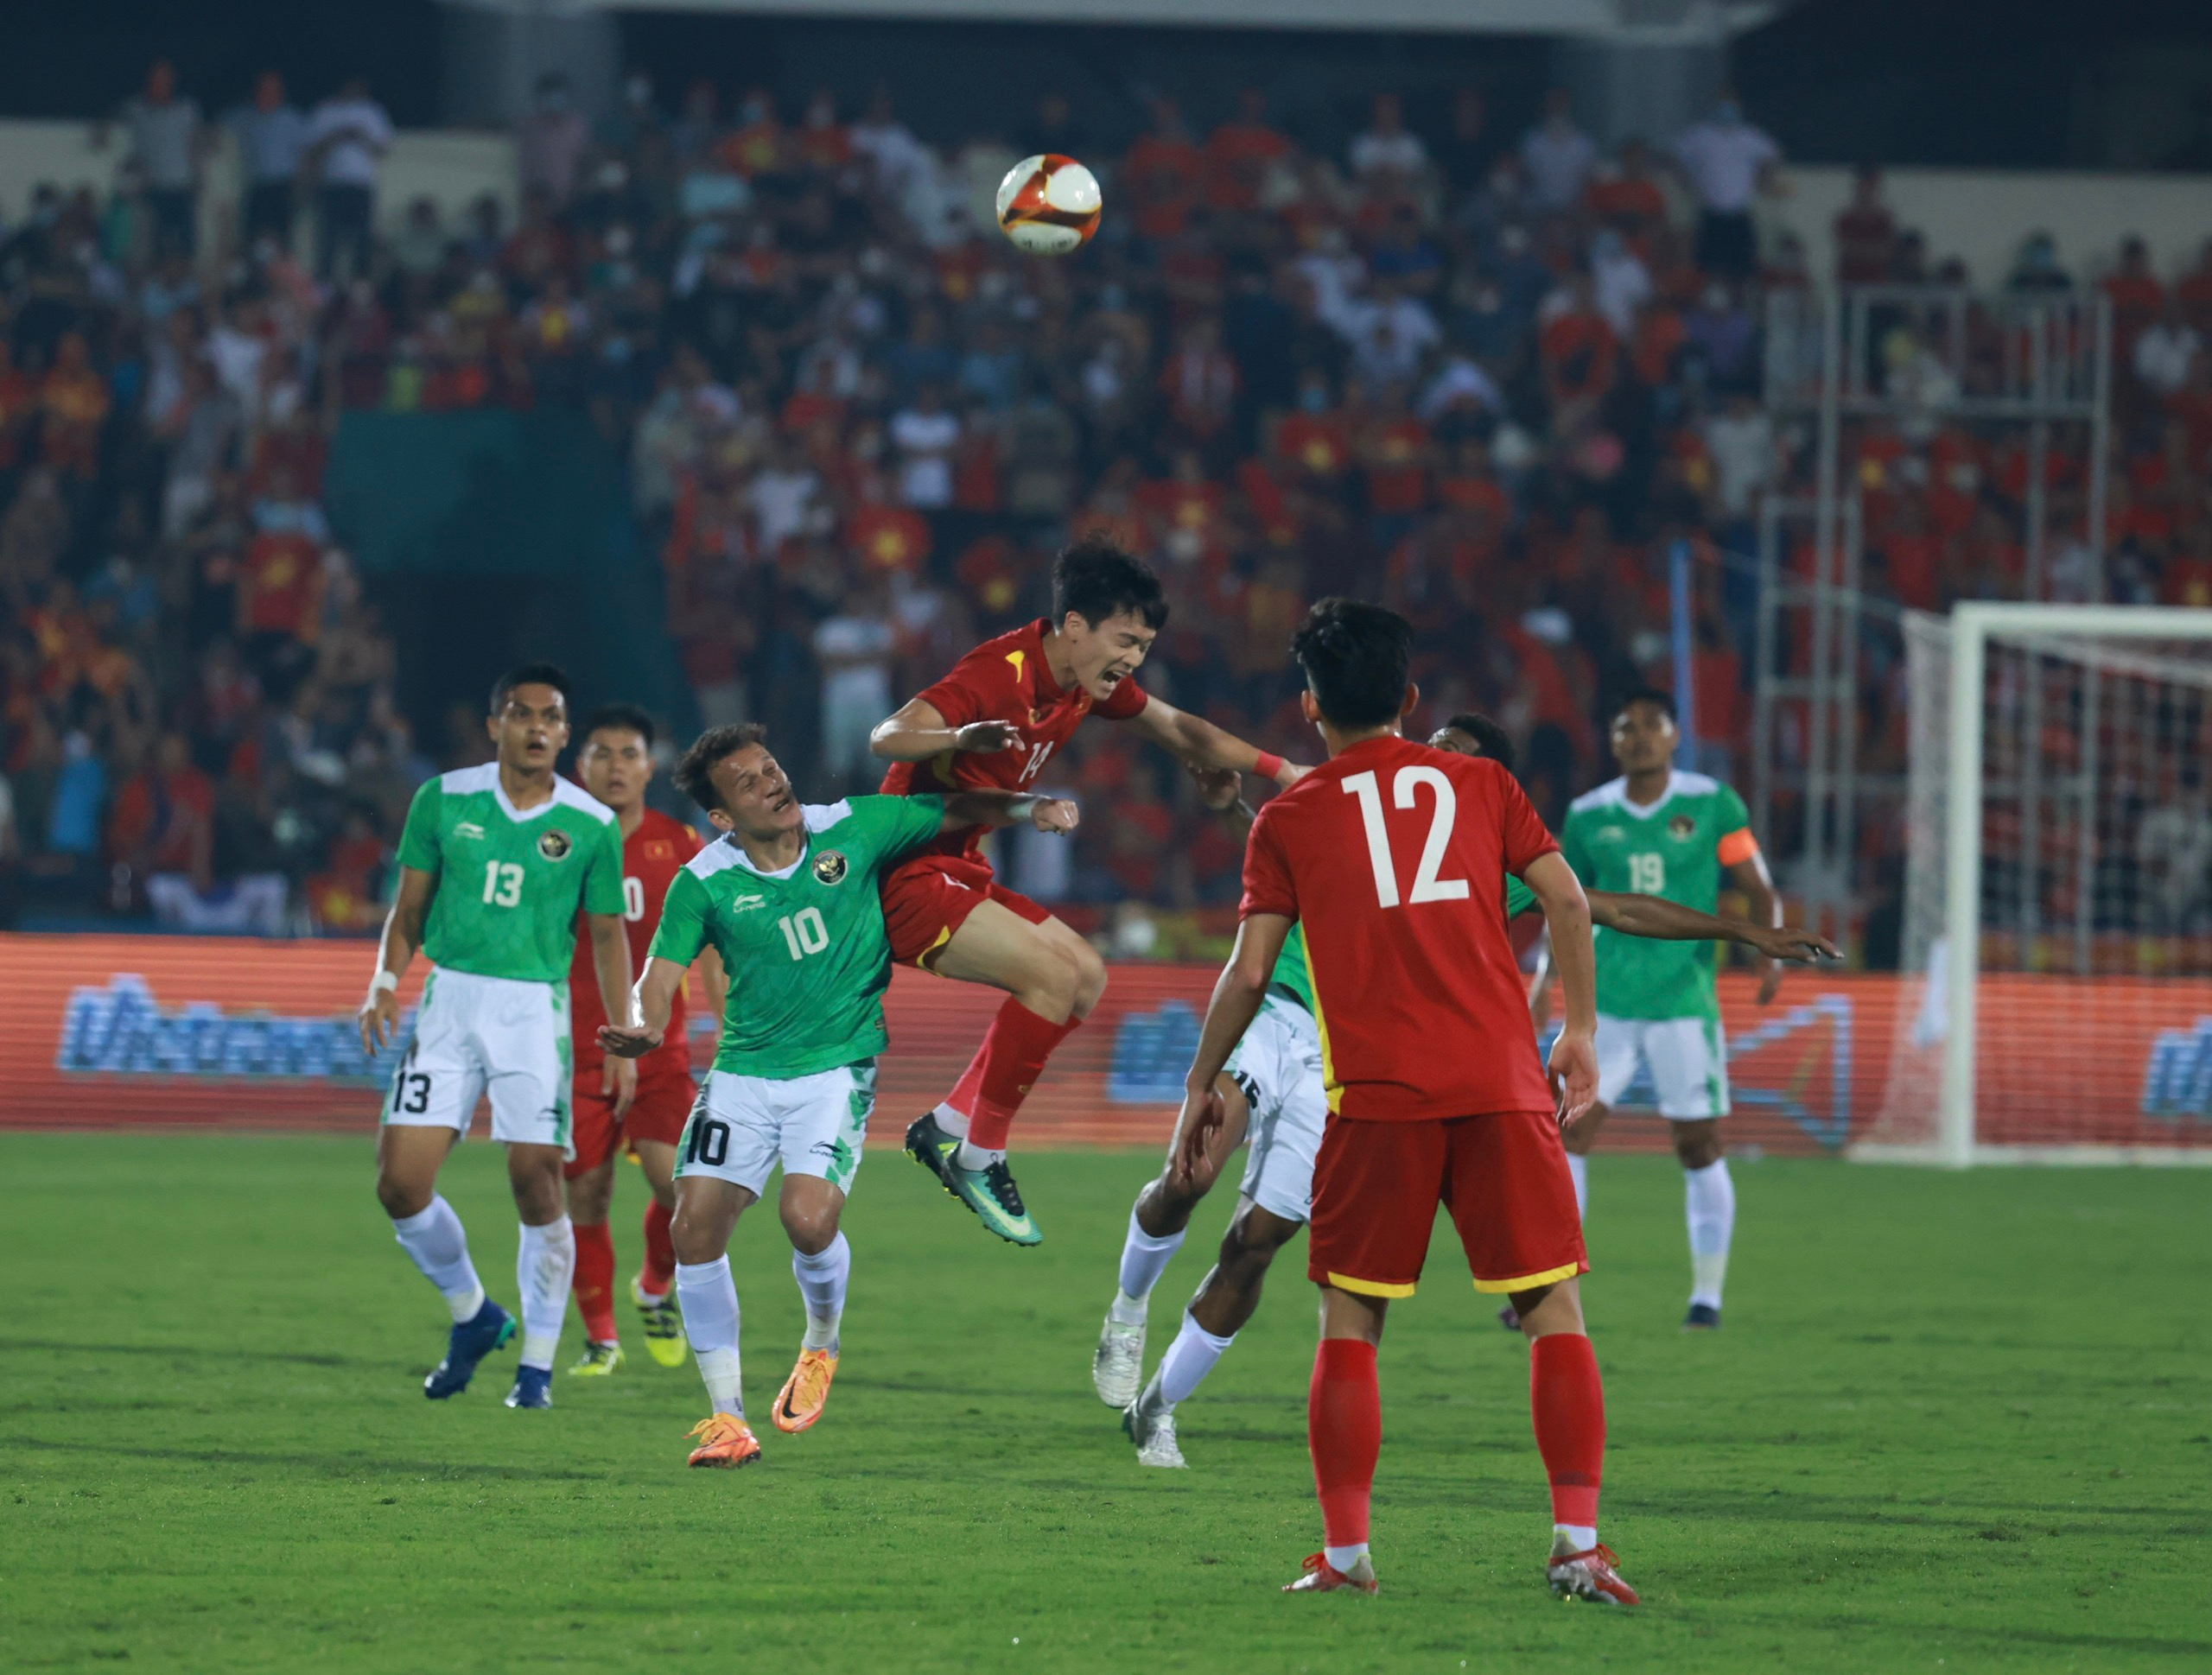 Phút 18: Hoàng Đức dứt điểm nguy hiểm. Số 14 của U23 Việt Nam đột phá từ giữa sân vượt qua 3 hậu vệ Indonesia rồi dứt điểm đưa bóng đi chệch cột dọc.